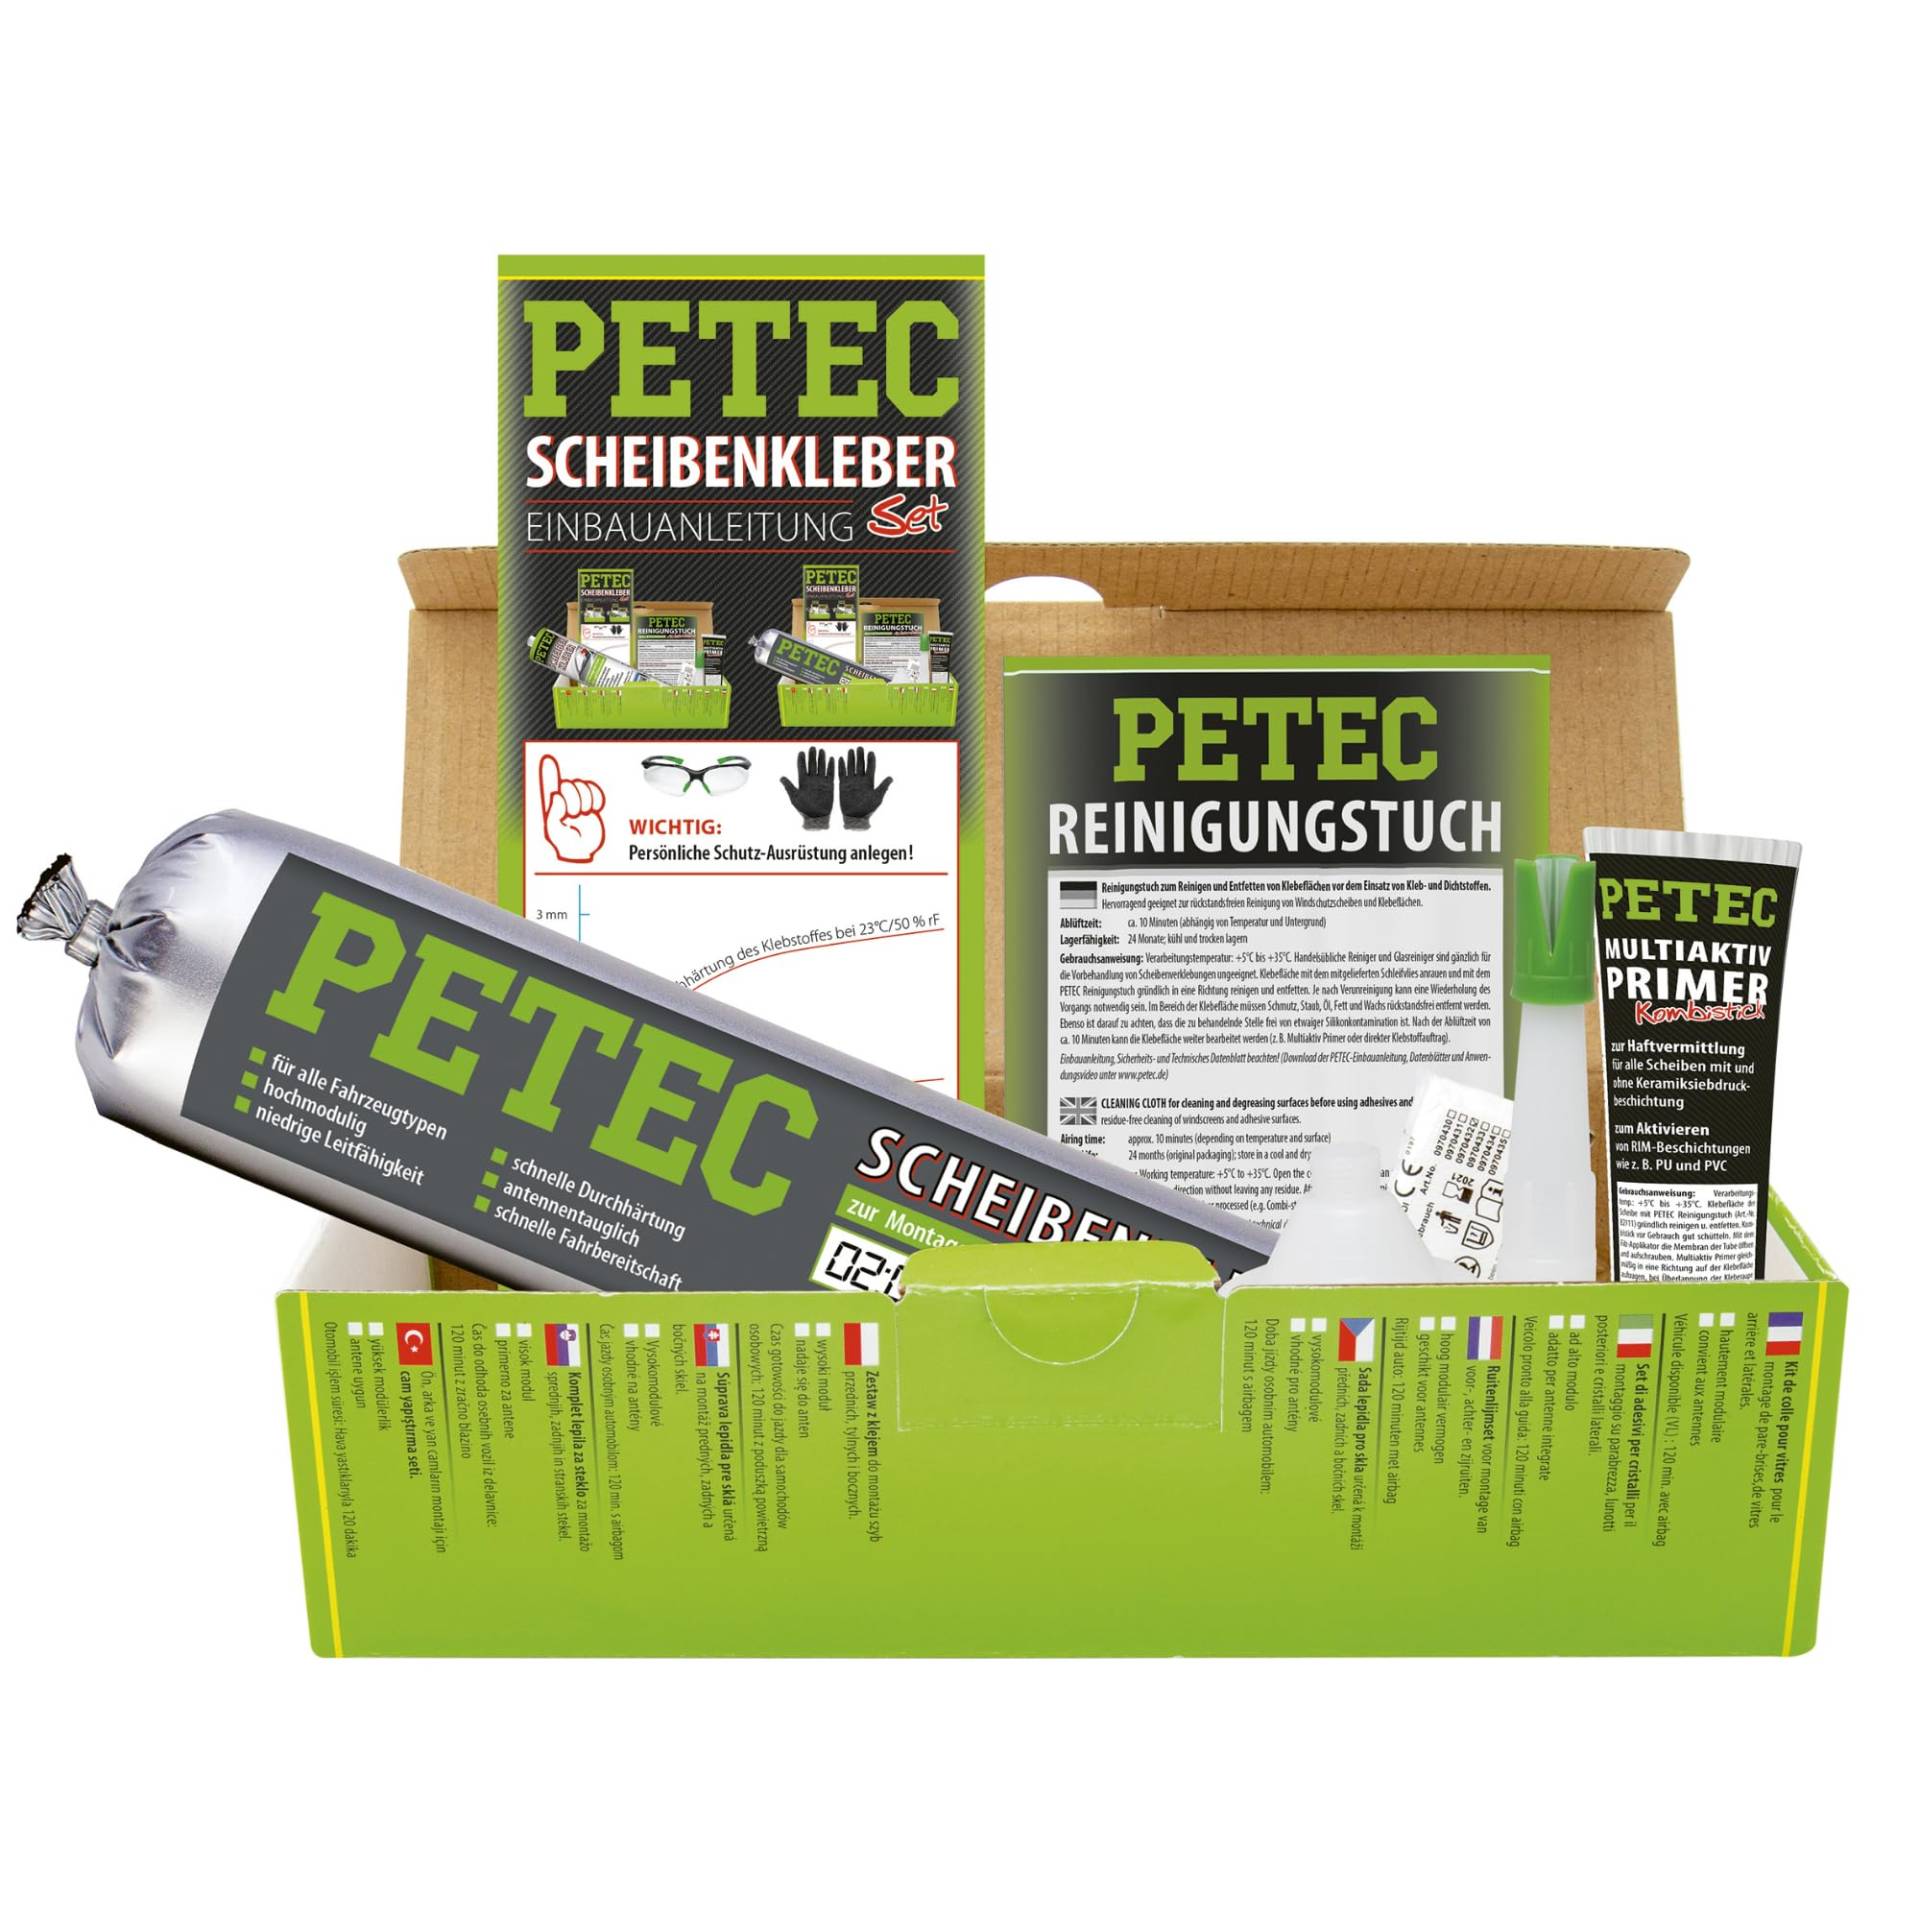 PETEC Auto Scheibenkleber Set Windschutzscheibe Reparaturset. 400 ml Scheiben Kleber Schlauchbeutel, Primer, Reinigungstuch, Einweg Handschuhe, 83433 von PETEC